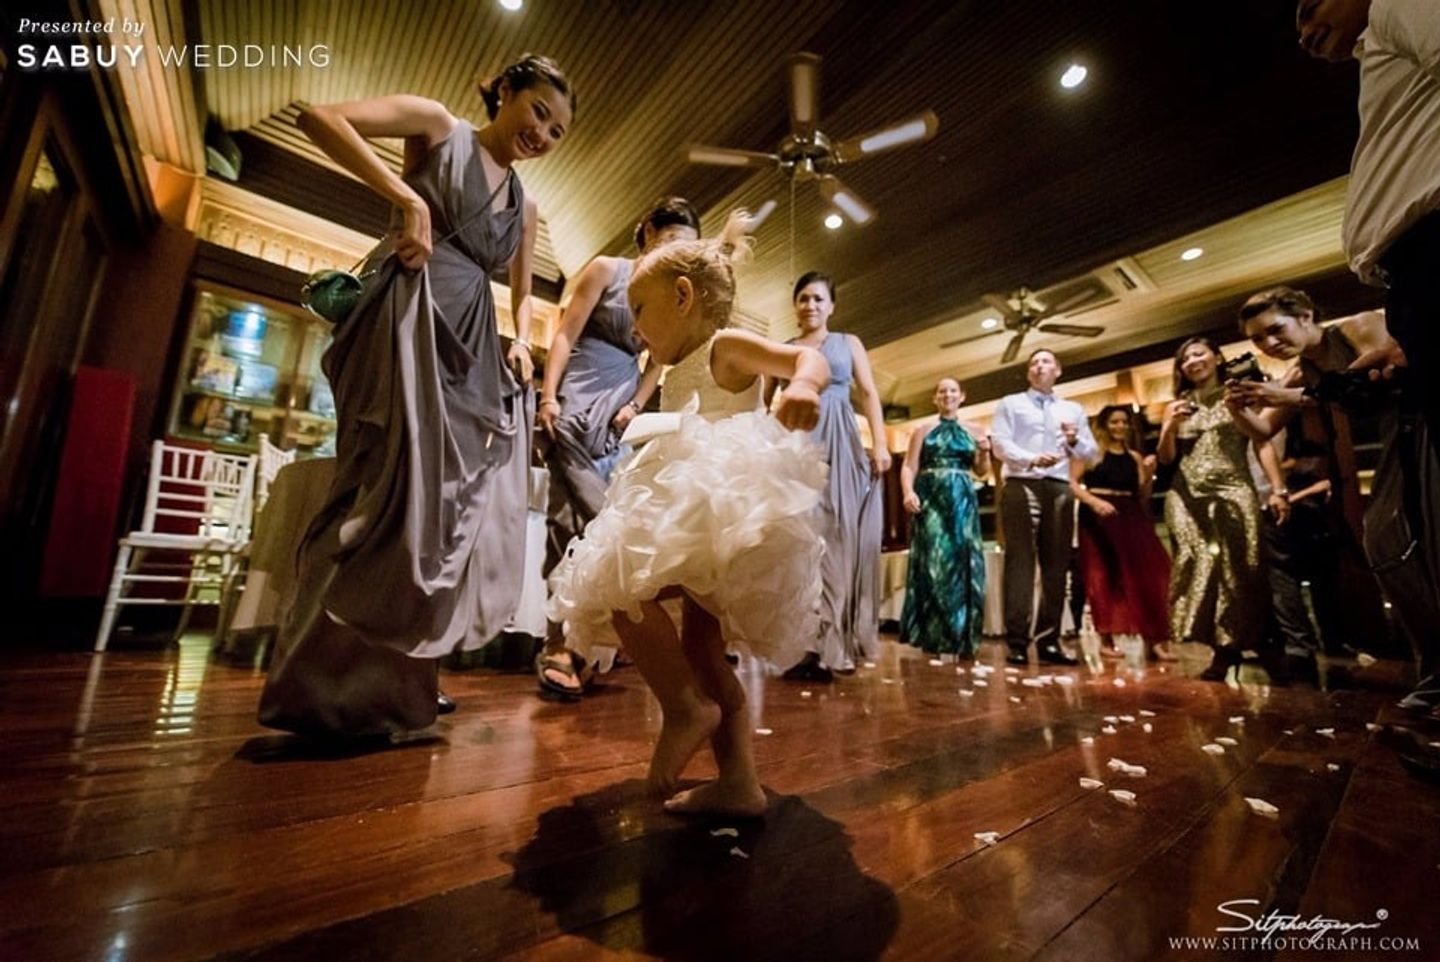 First dance,งานแต่งงาน รีวิวงานแต่งอบอุ่นตรึงใจ จัดพิธีฝรั่งให้สวยงามได้ในวังจักรพงษ์